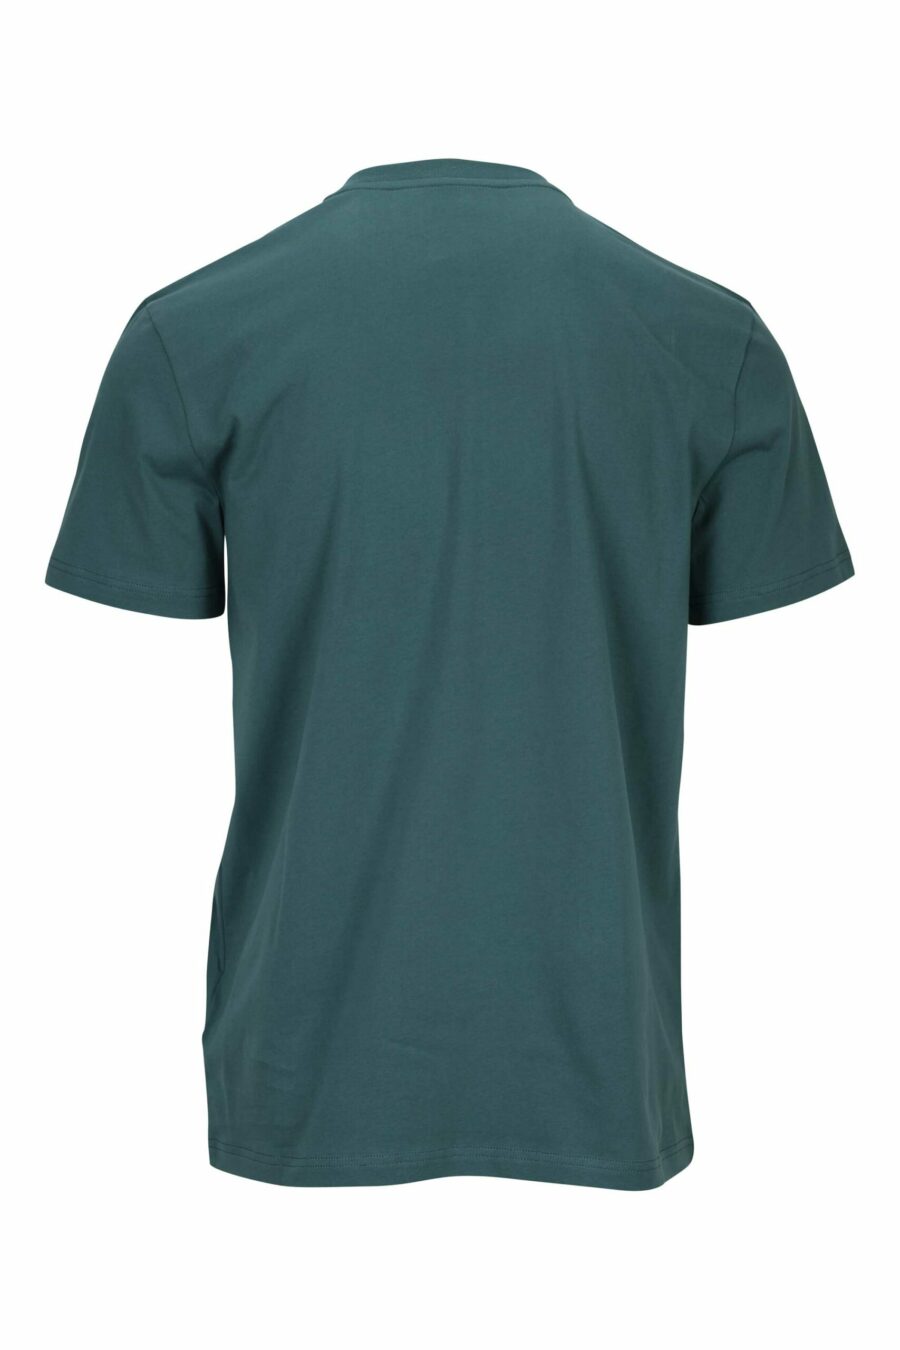 Camiseta verde de algodón orgánico con maxilogo negro clásico - 667113391533 1 scaled